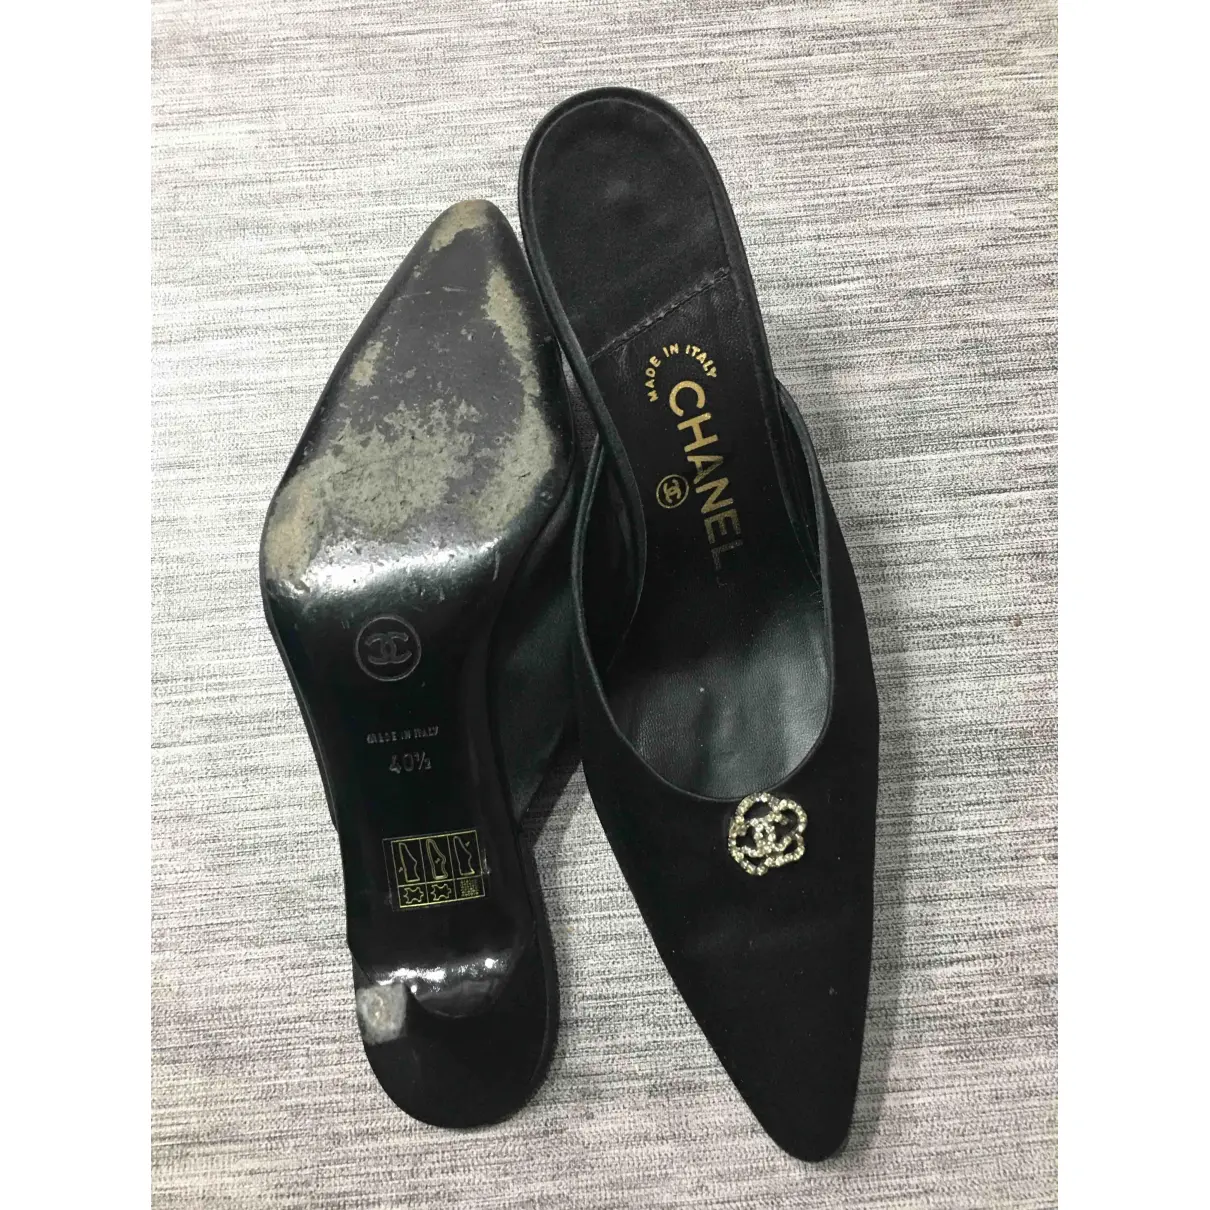 Buy Chanel Cloth heels online